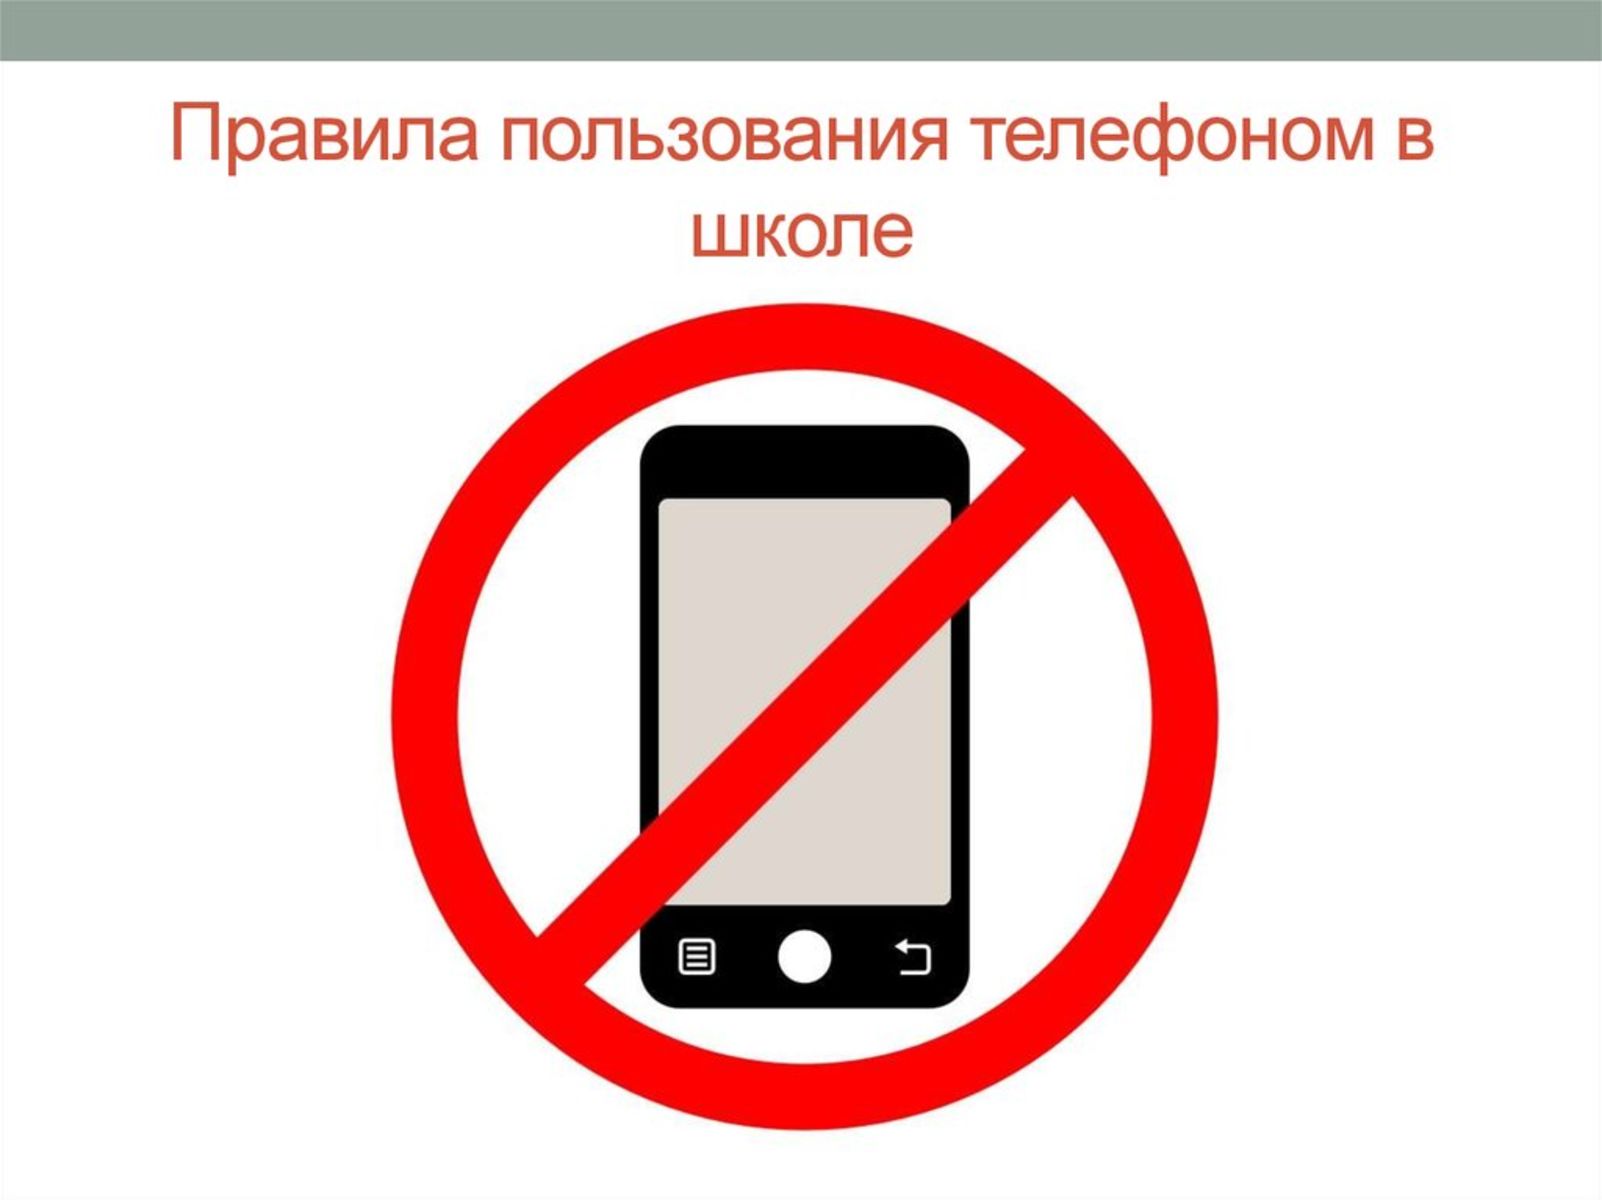 Почему нужно отключать. Запрет на пользование телефоном. Запреи использования мобиль. Правила пользования телефоном в школе. Использование телефона в школе запрещено.